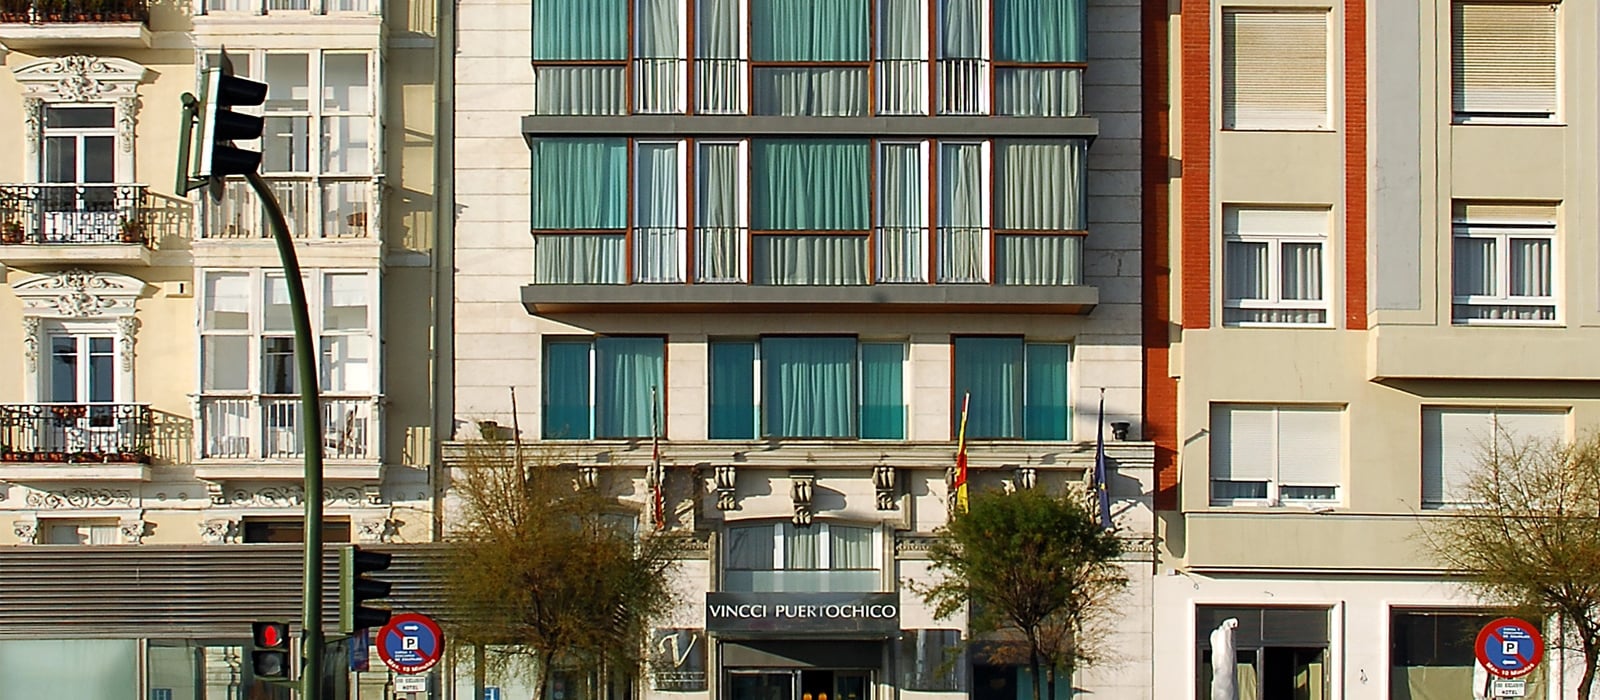 Seitenansicht-Hotel Santander Puertochico - Vincci Hoteles